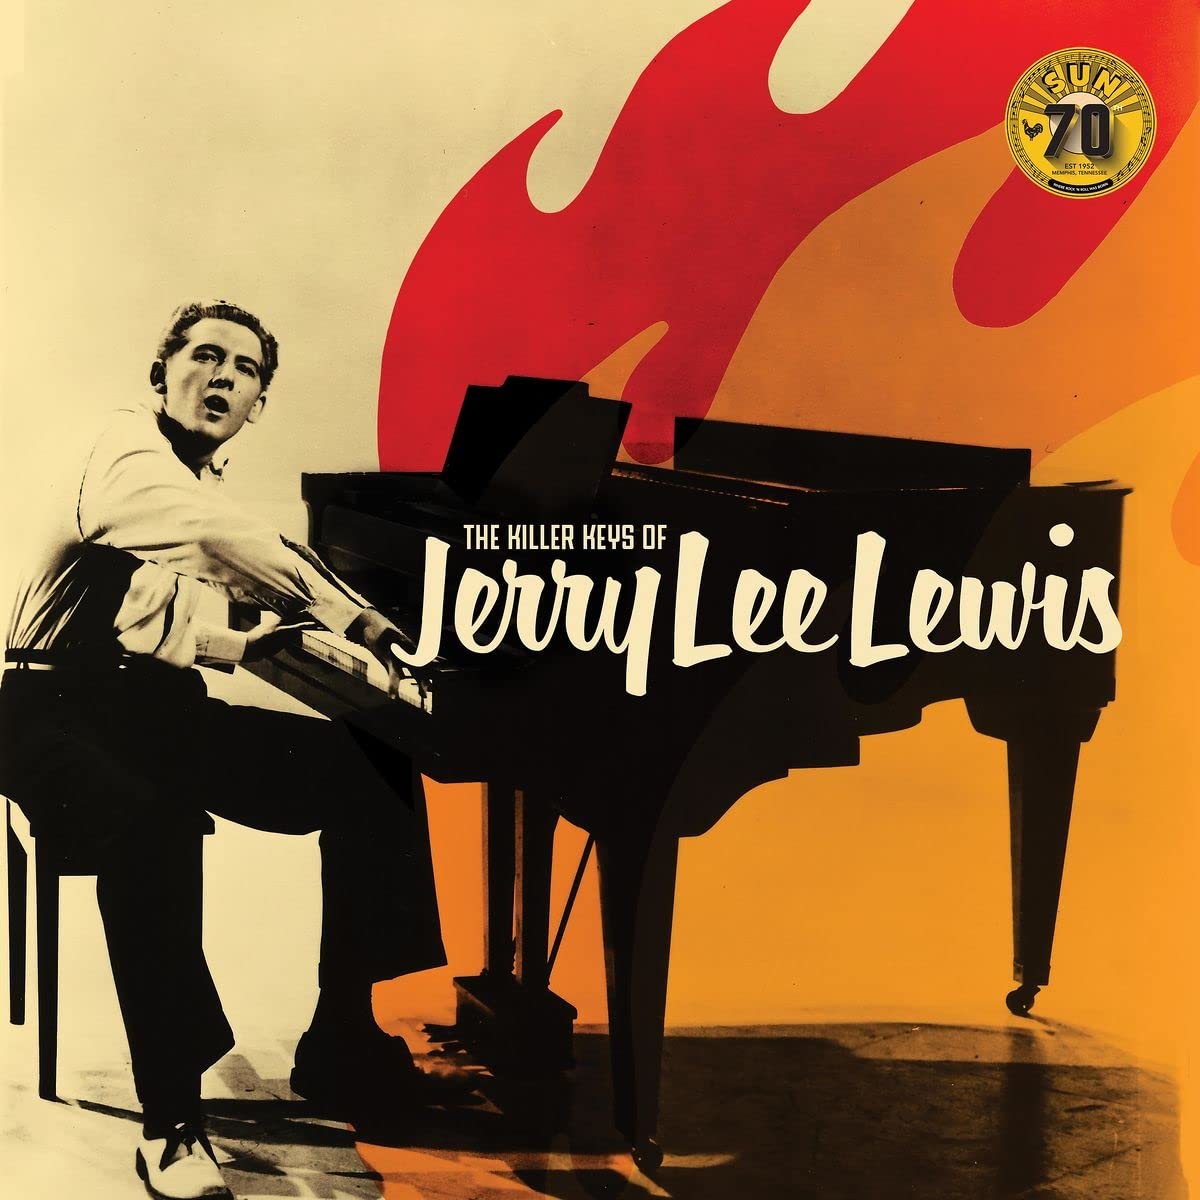 виниловая пластинка lewis jerry lee high school confidential Виниловая пластинка Lewis, Jerry Lee, Killer Keys Of (0015047805167)